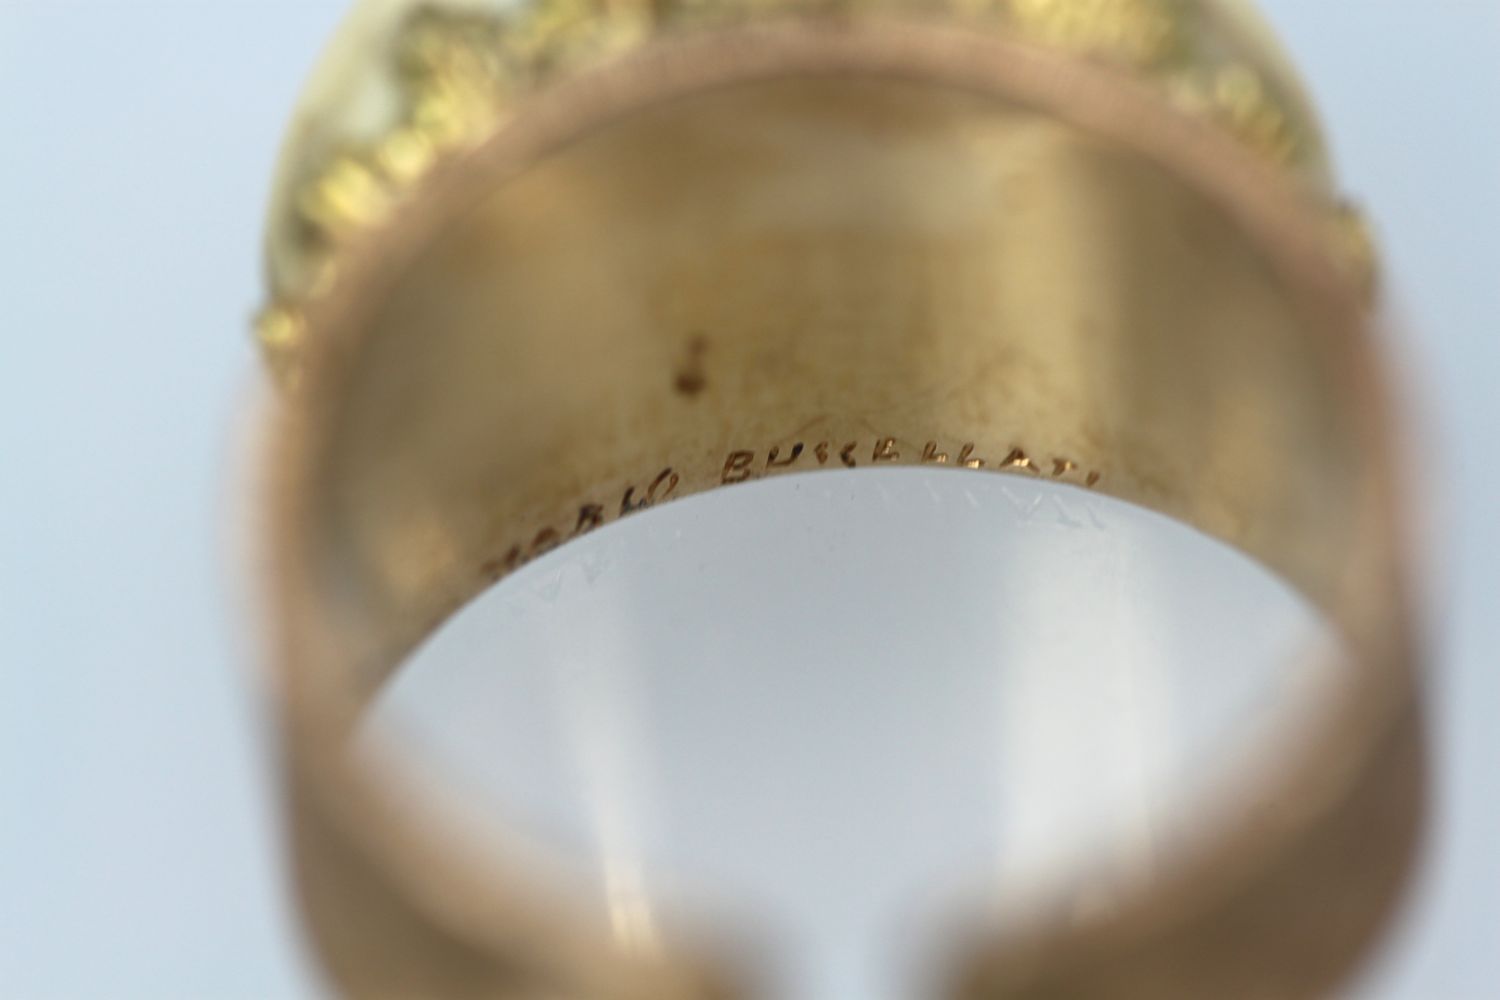 Buccellati 18K Brushed Yellow Gold & Turquoise Ring inside engraving